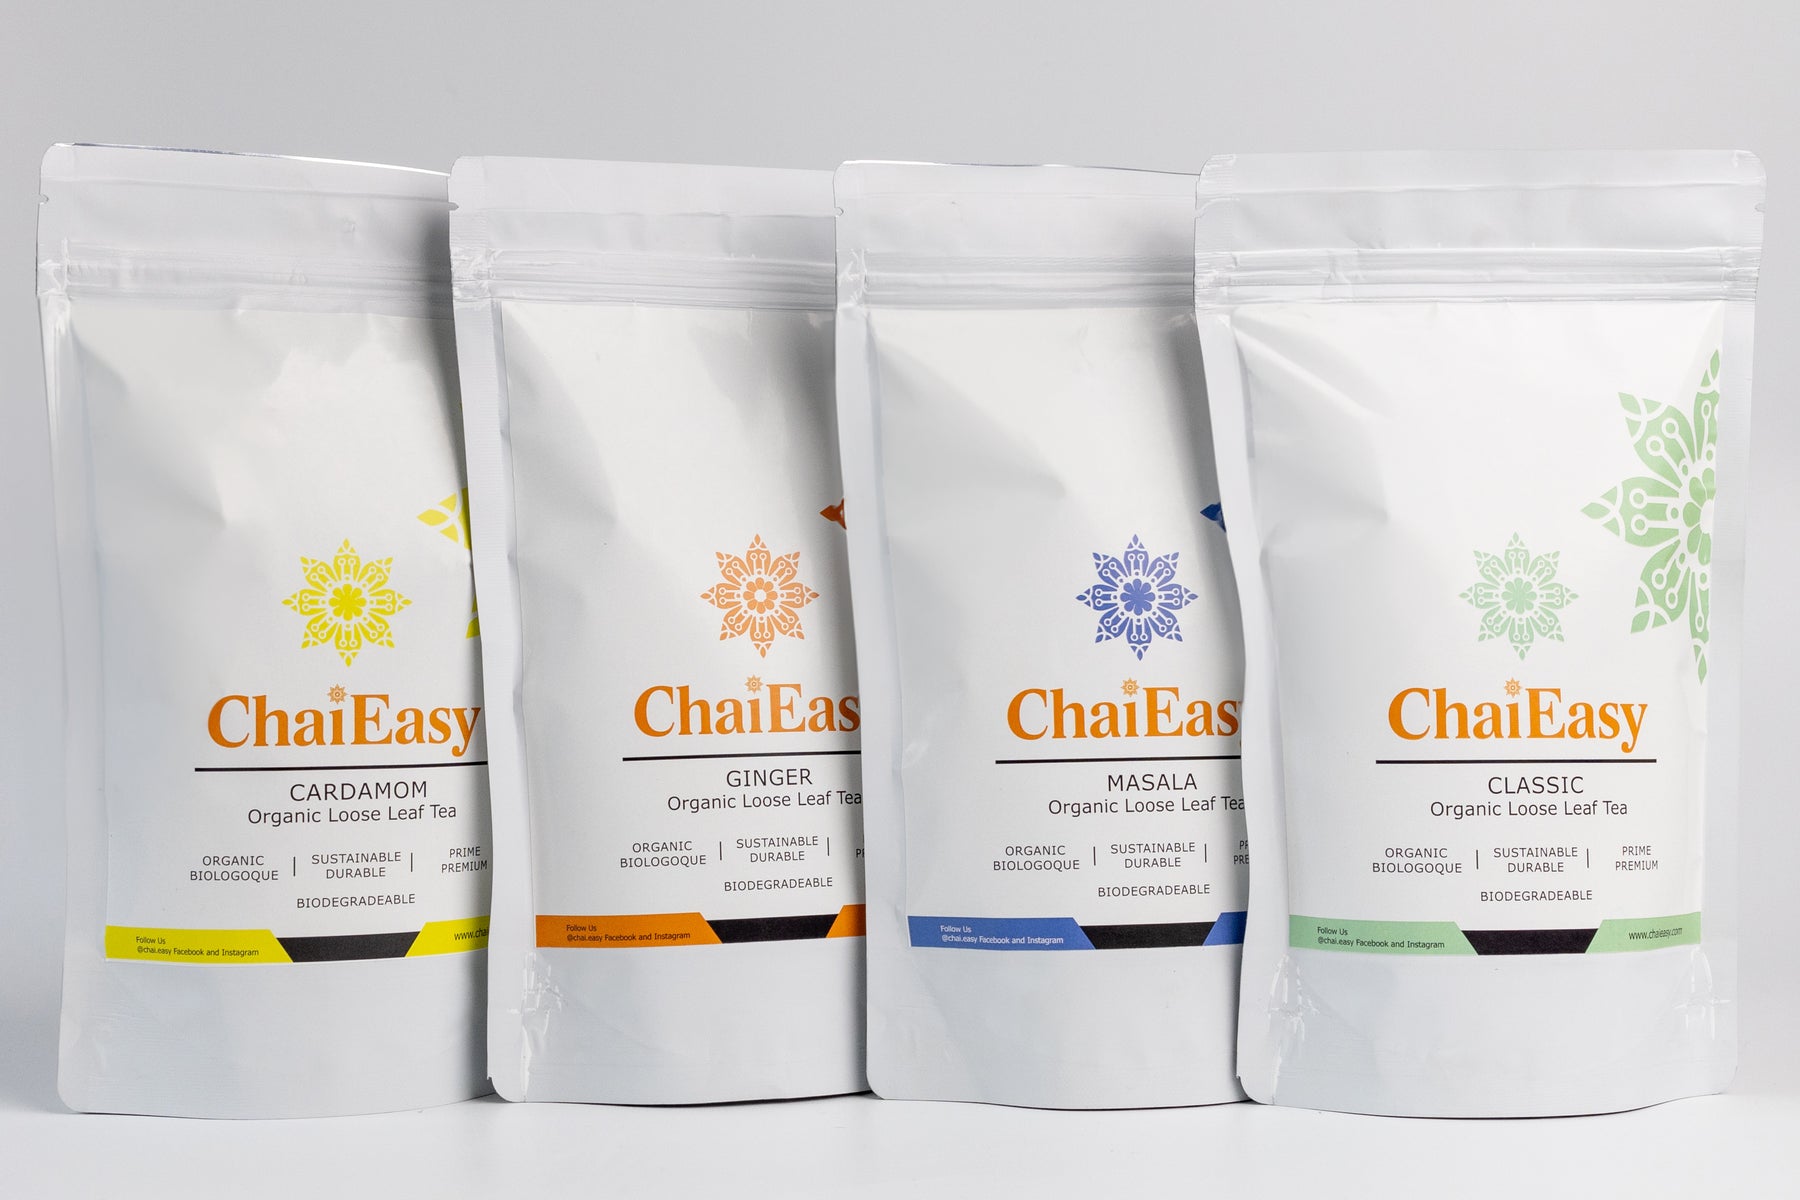  ChaiEasy Automatic Chai & Tea Maker